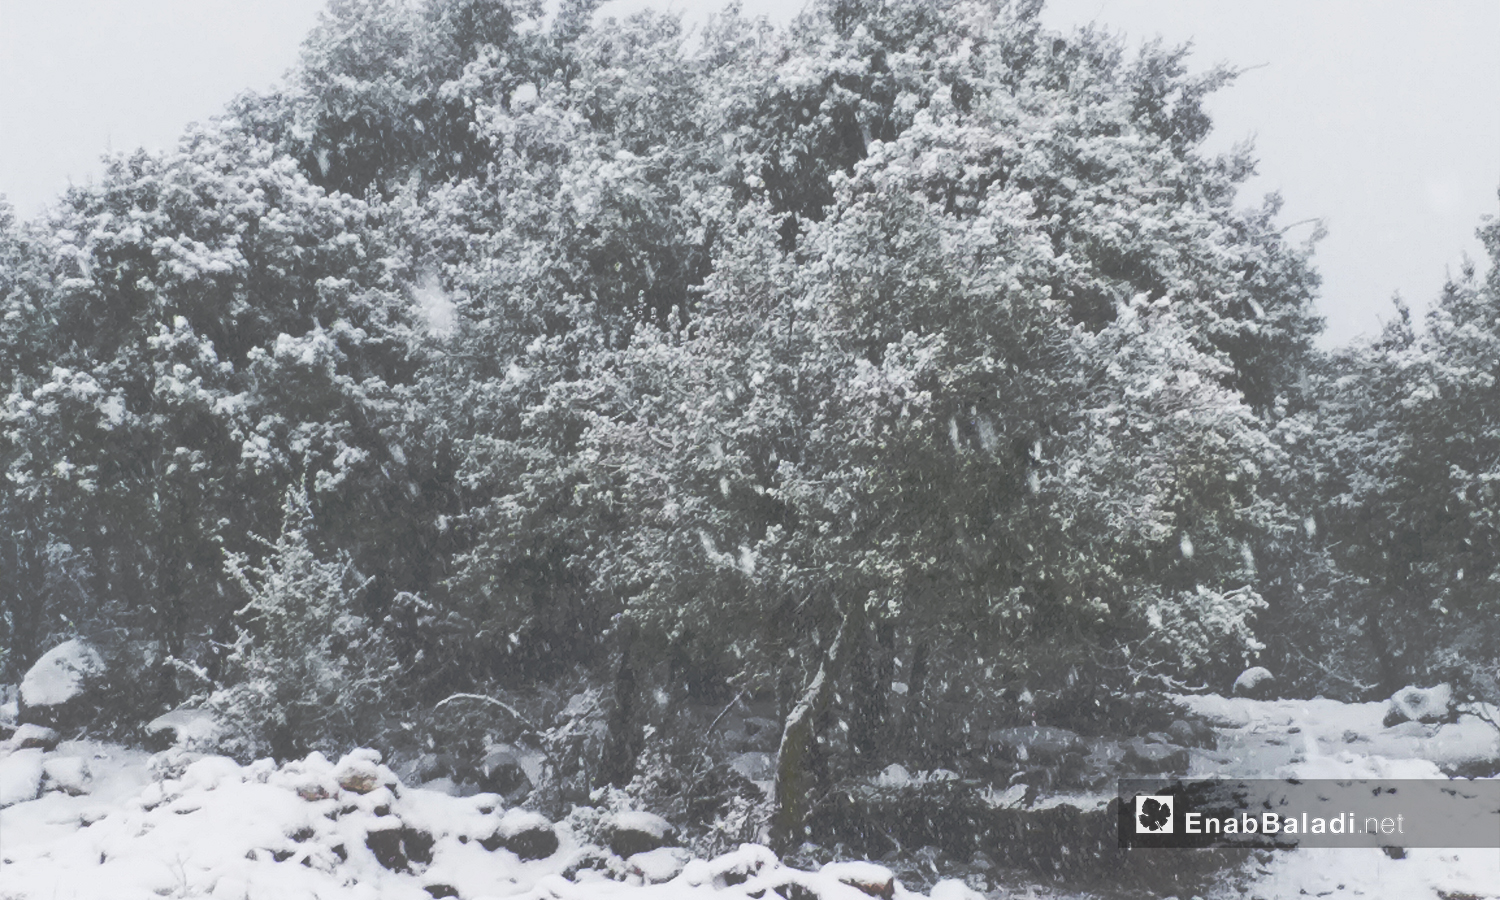 أشجار السنديان يغطيها الثلج في مدينة القنيطرة - 21 كانون الثاني 2021 (عنب بلدي)